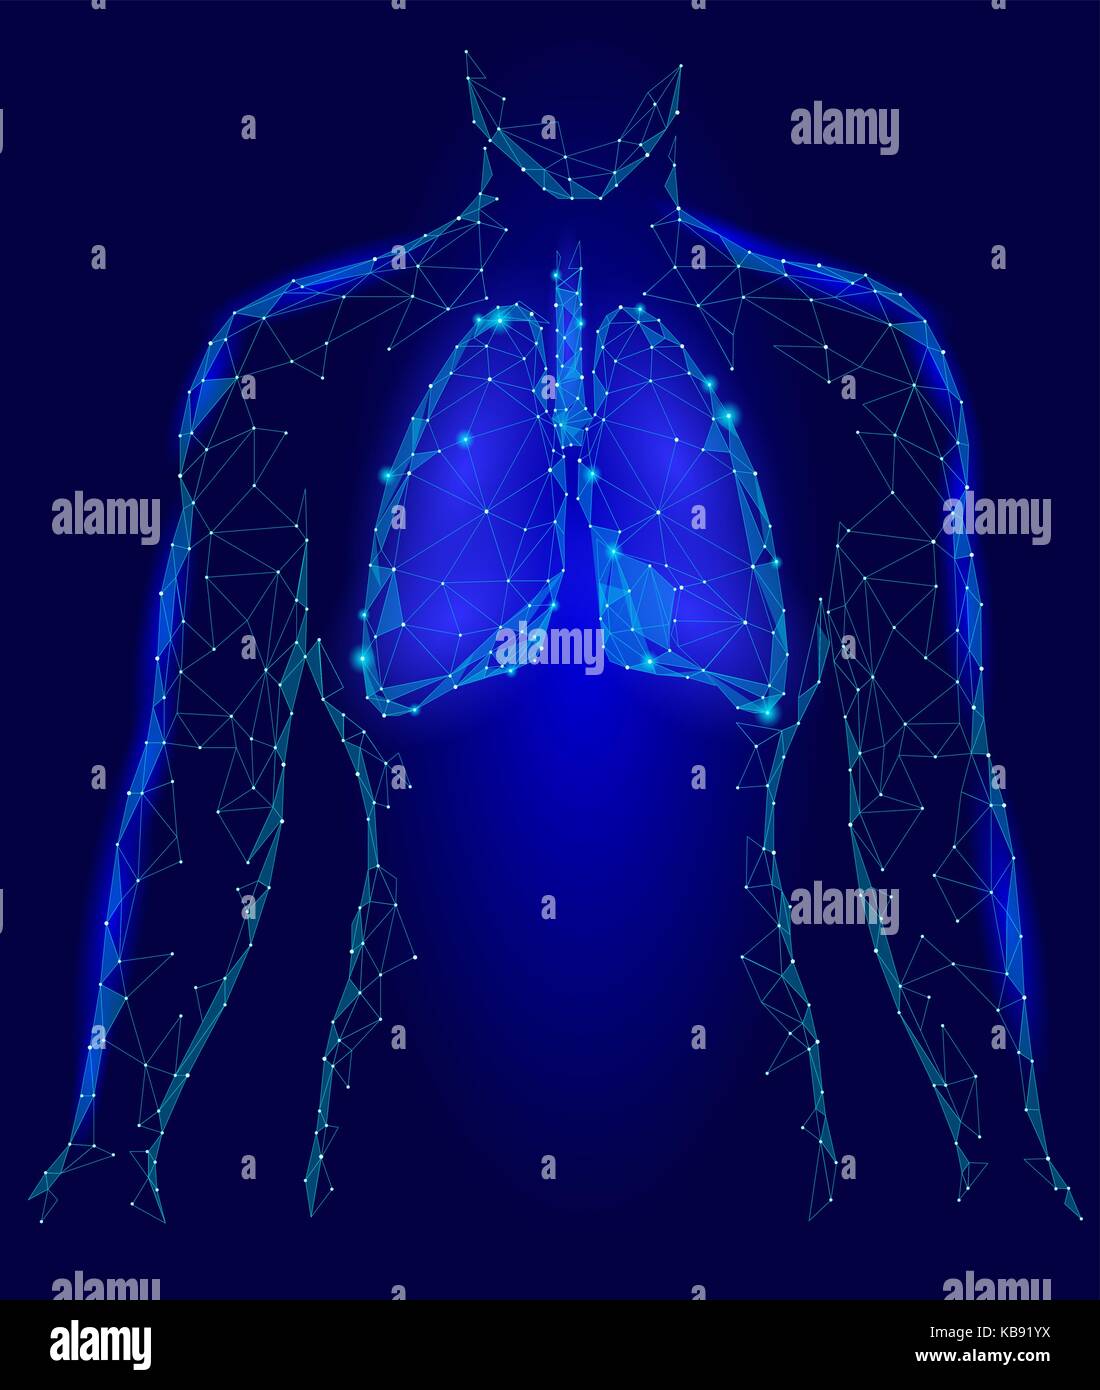 Menschliche Lungen internen Organ. Atemwege im Körper Silhouette. Low Poly 3d angeschlossen Dots Dreieck polygonalen Design. Blaue Farbe Hintergrund Vector Illustration Stock Vektor